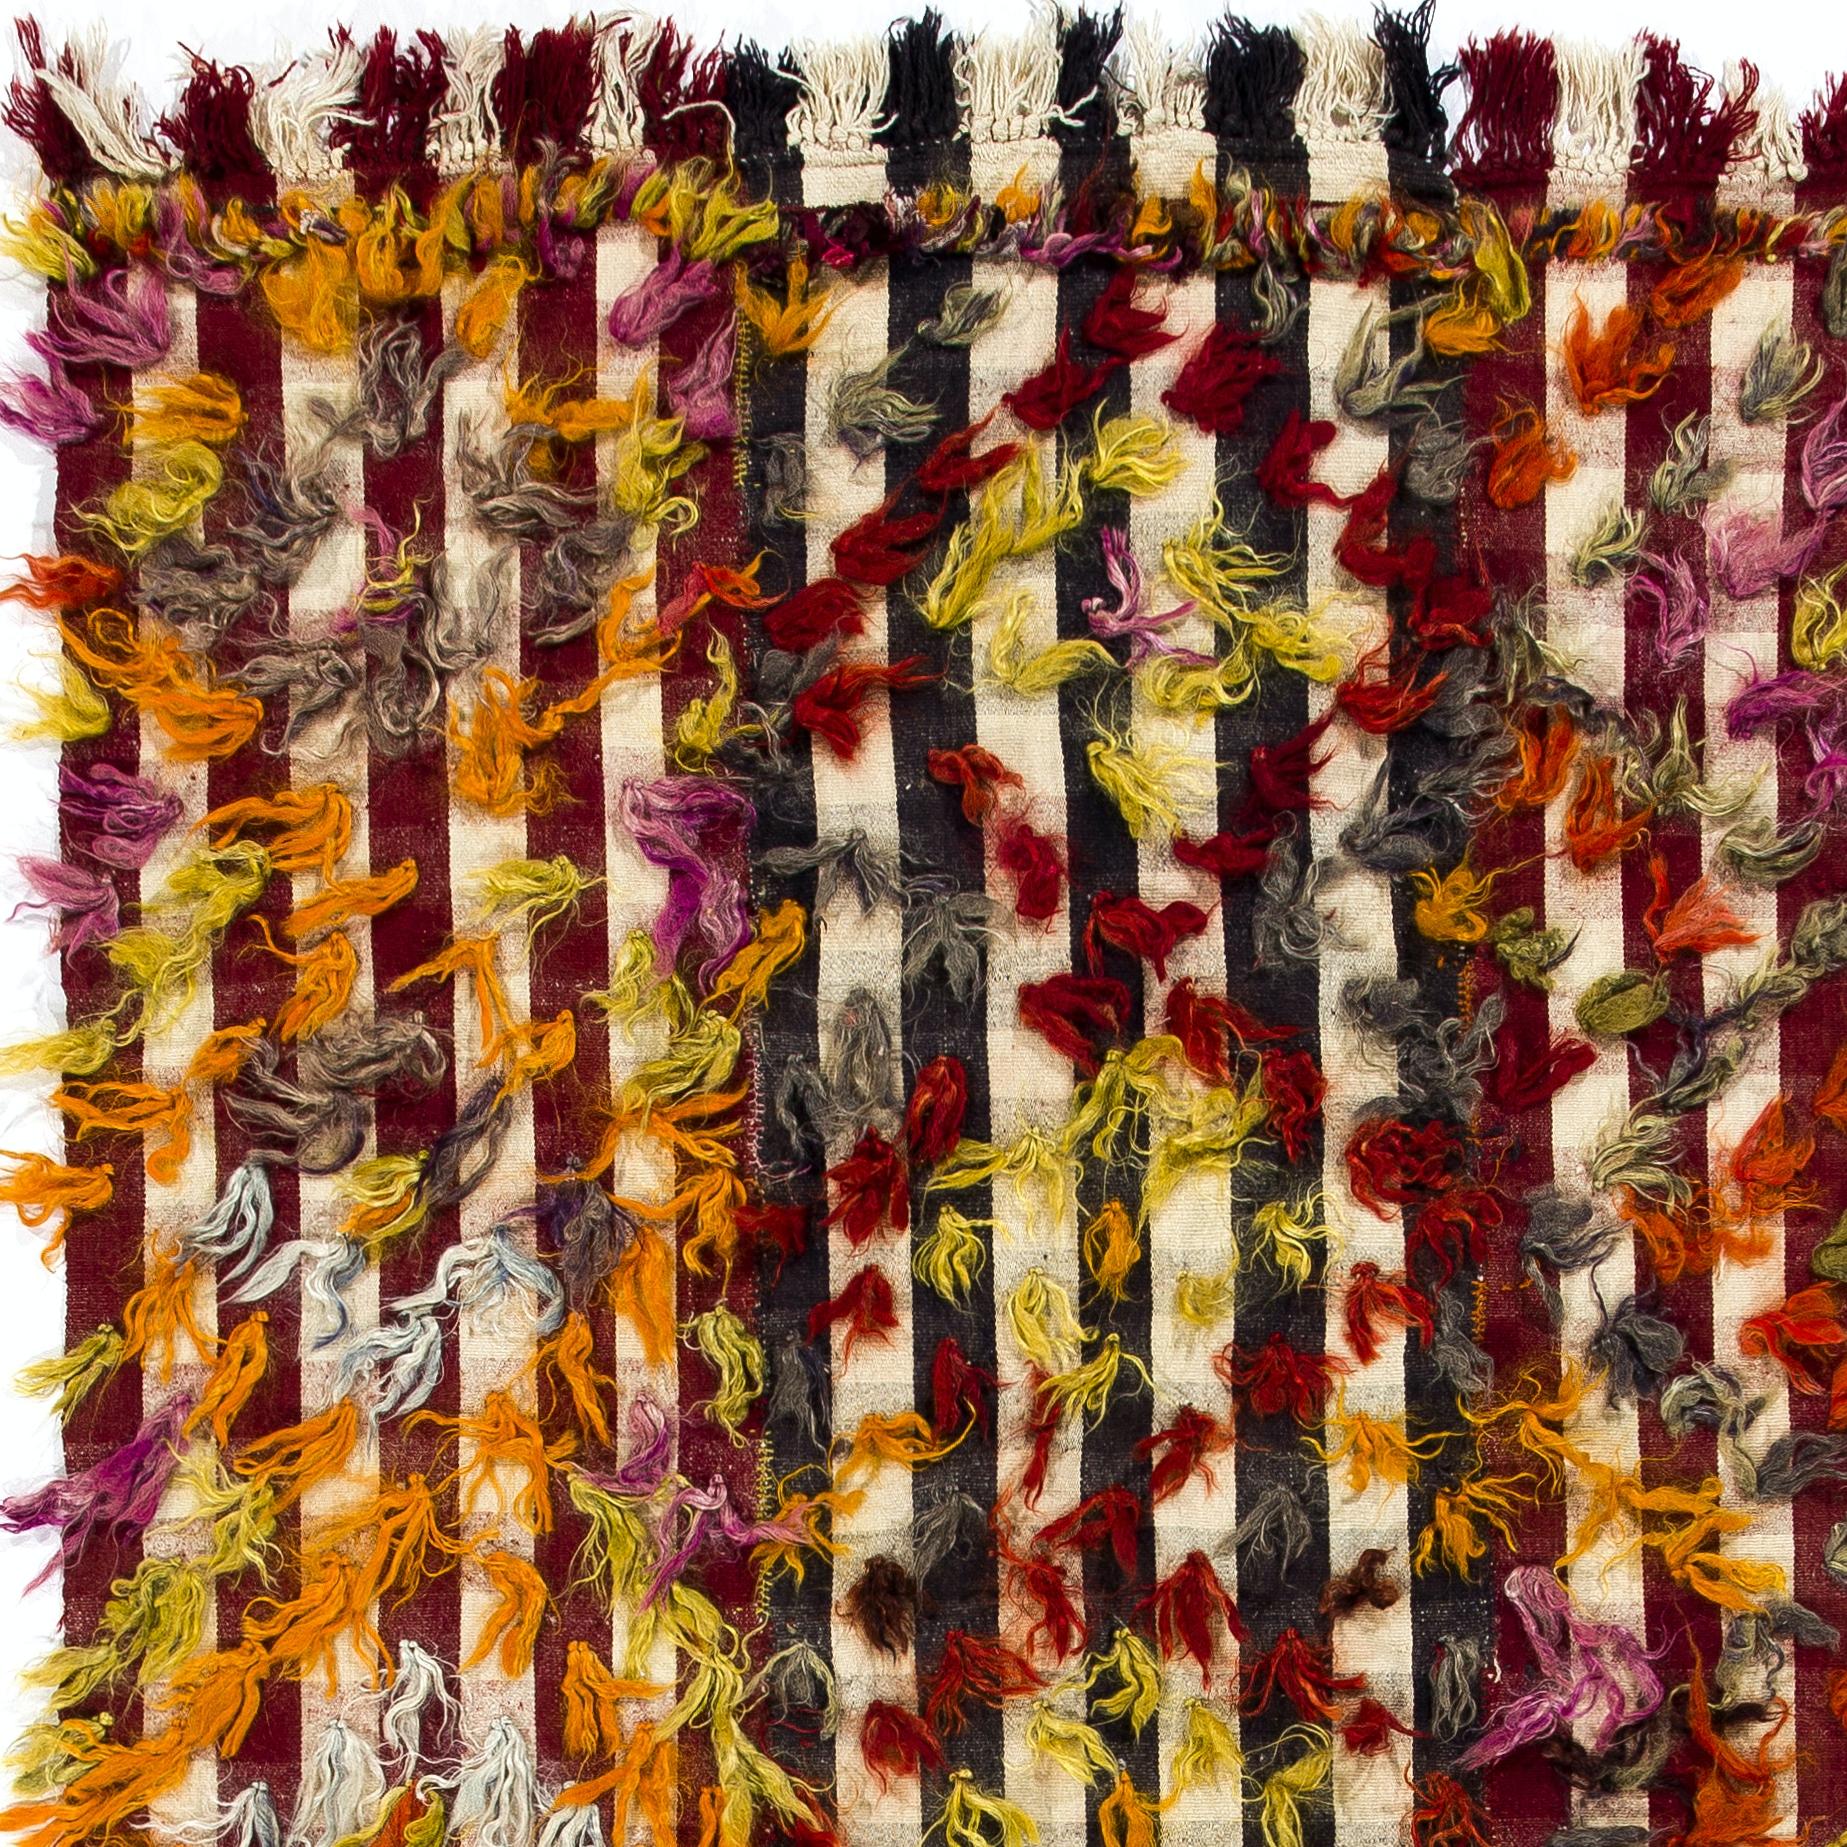 Ce tapis tissé à la main a été produit par des villageois kurdes du centre de la Turquie pour un usage quotidien au cours du troisième quart du 20e siècle. Ces splendides tissages anciens étaient utilisés de diverses manières : tentures murales,